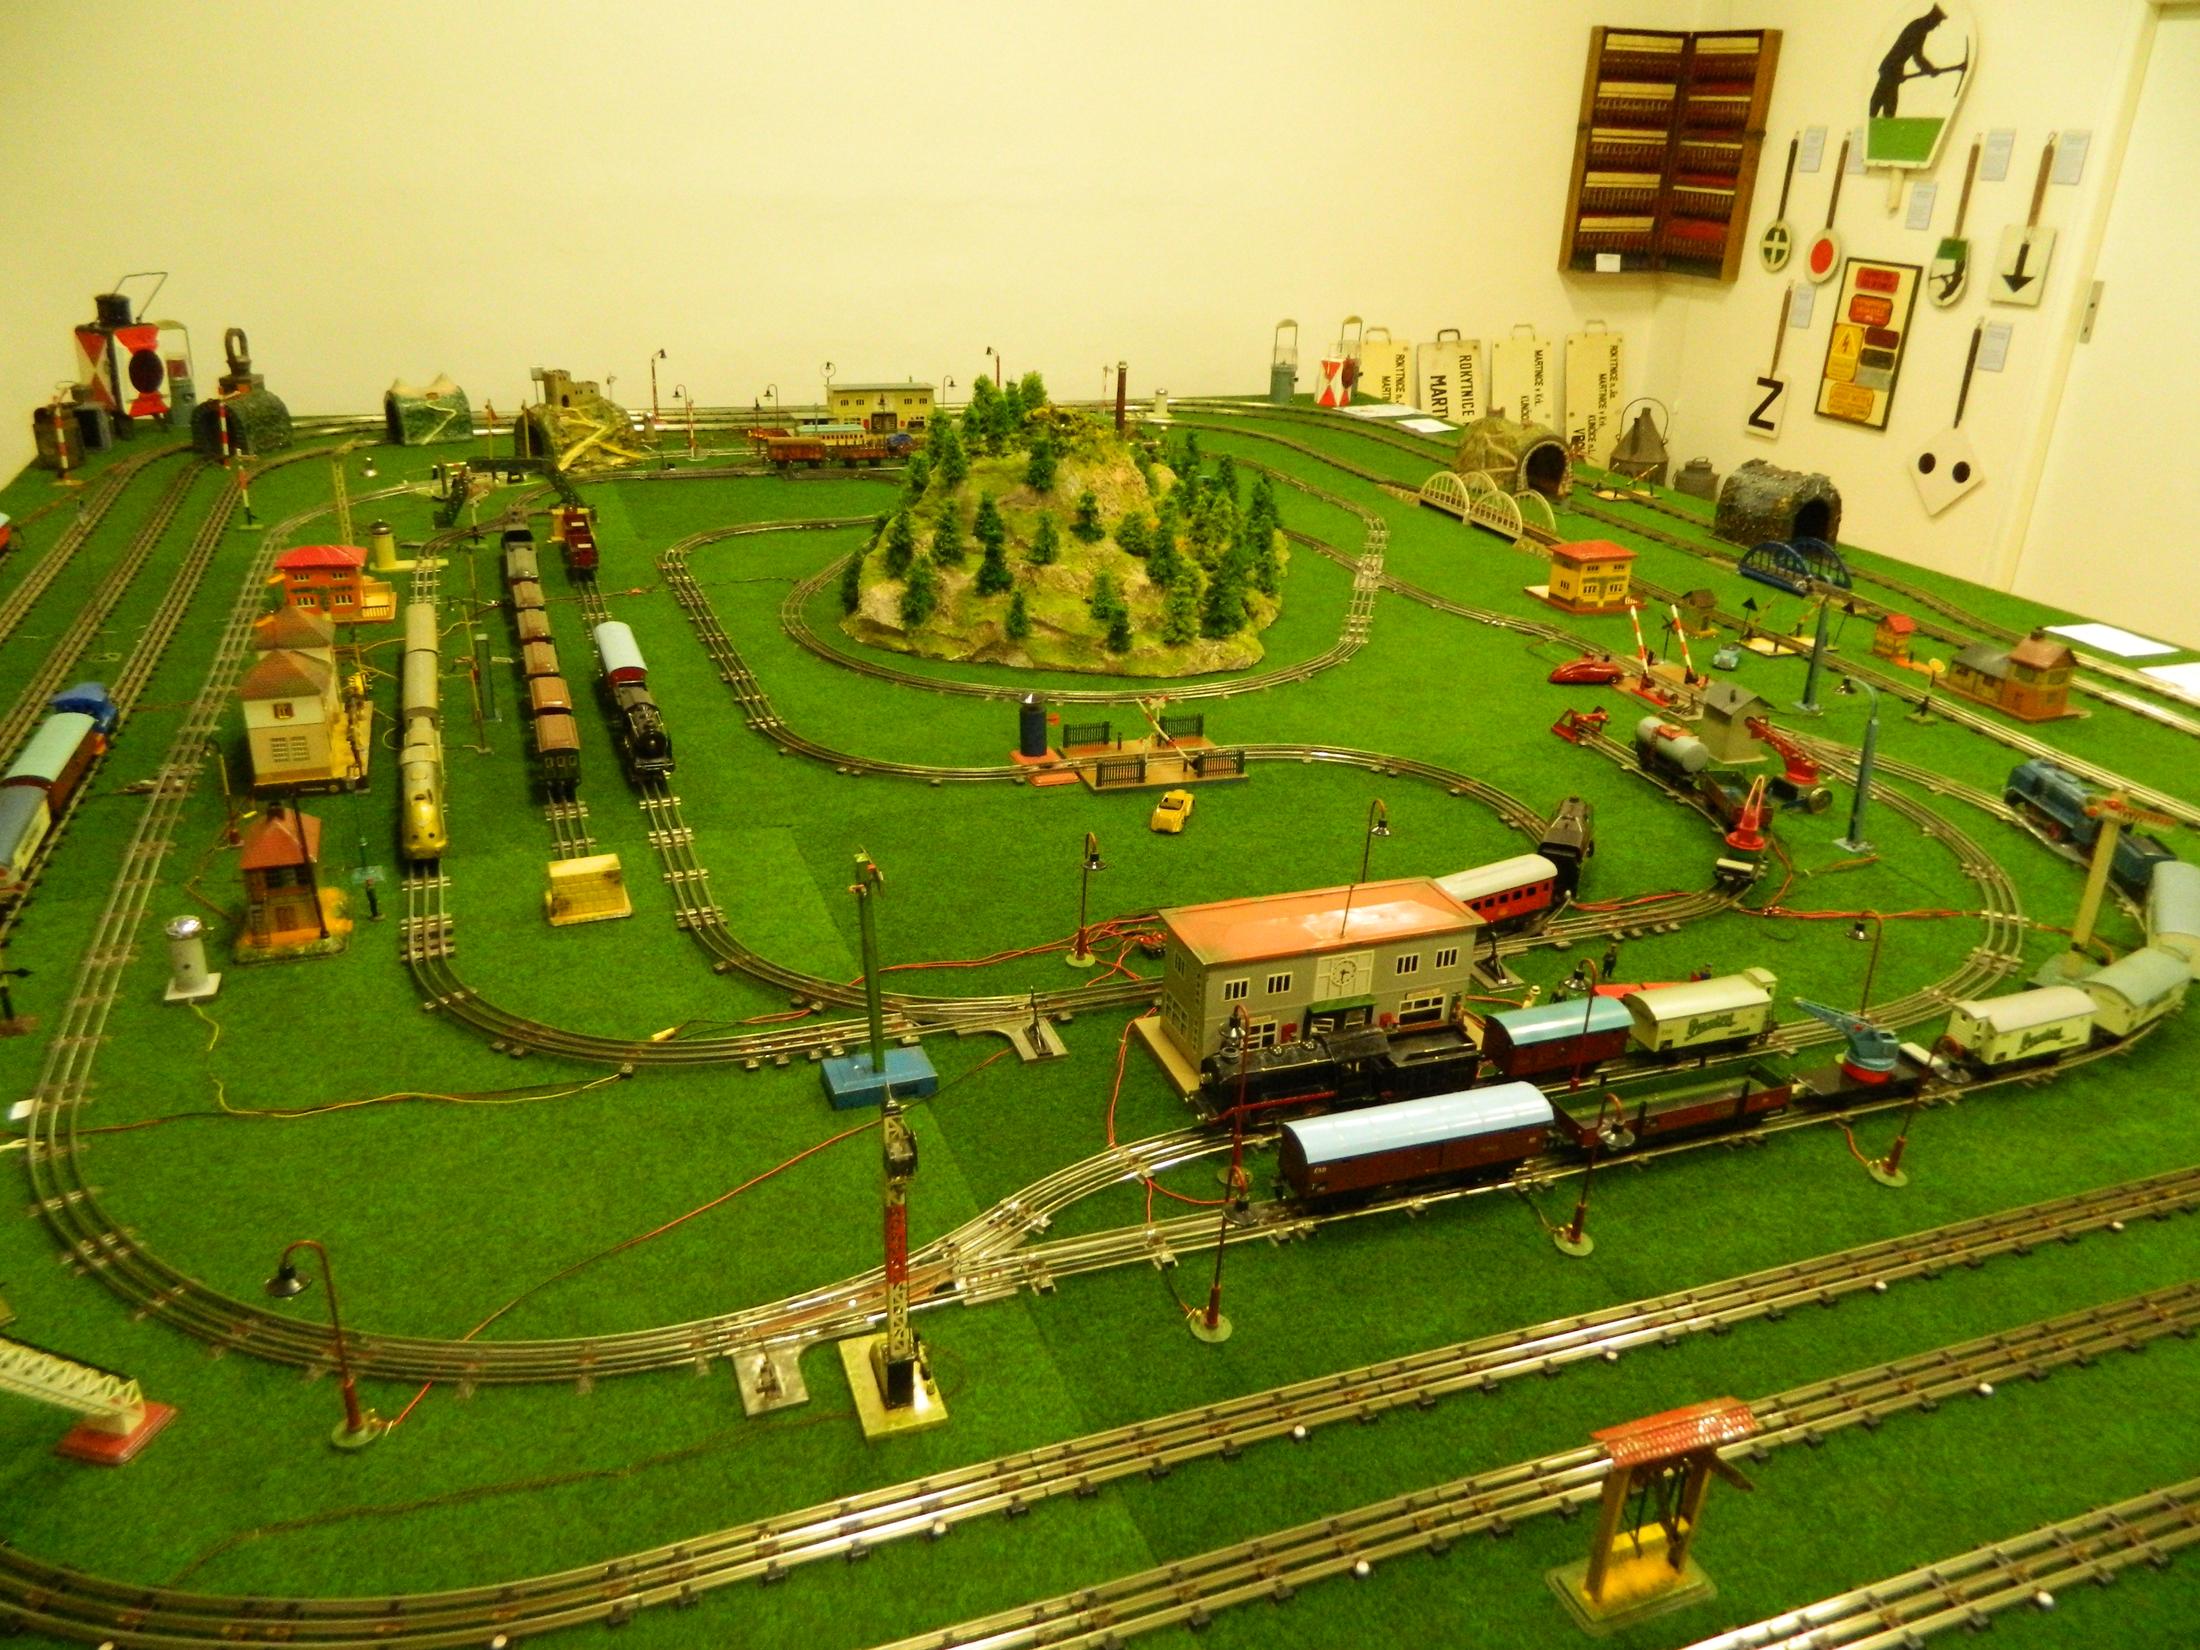 Muzeum technických hraček, expozice B